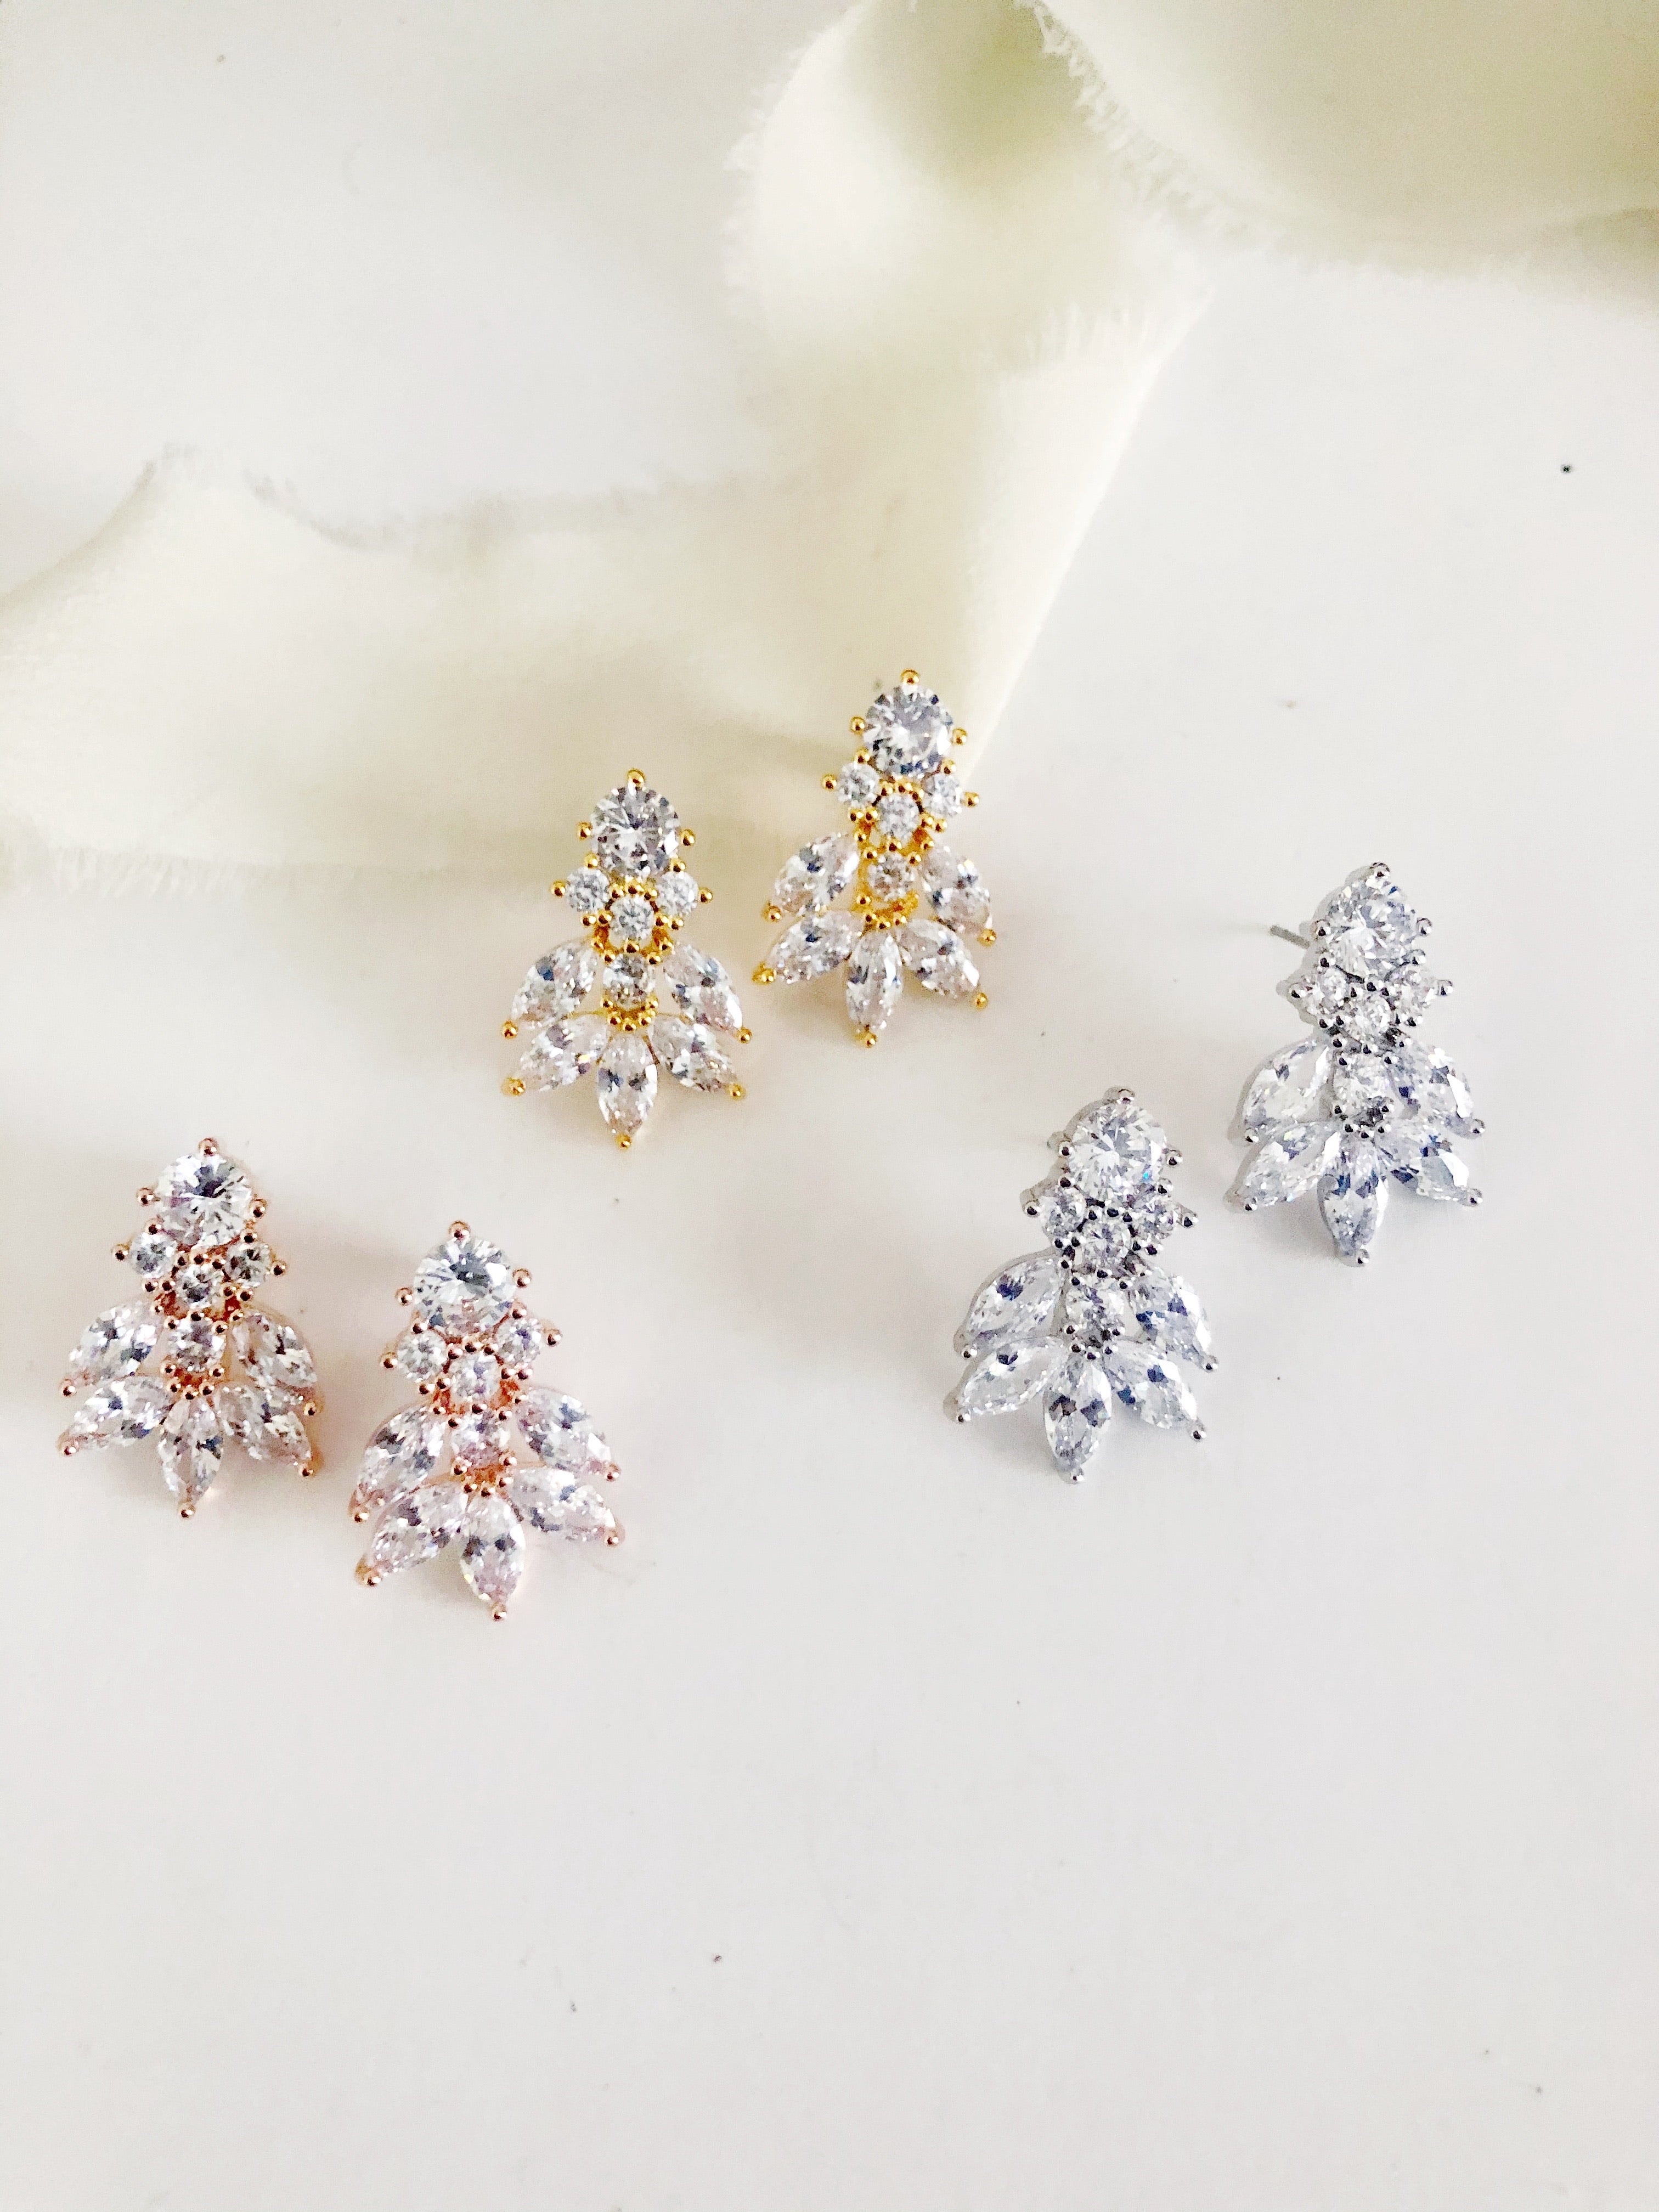 Sofia Diamond Stud Earrings